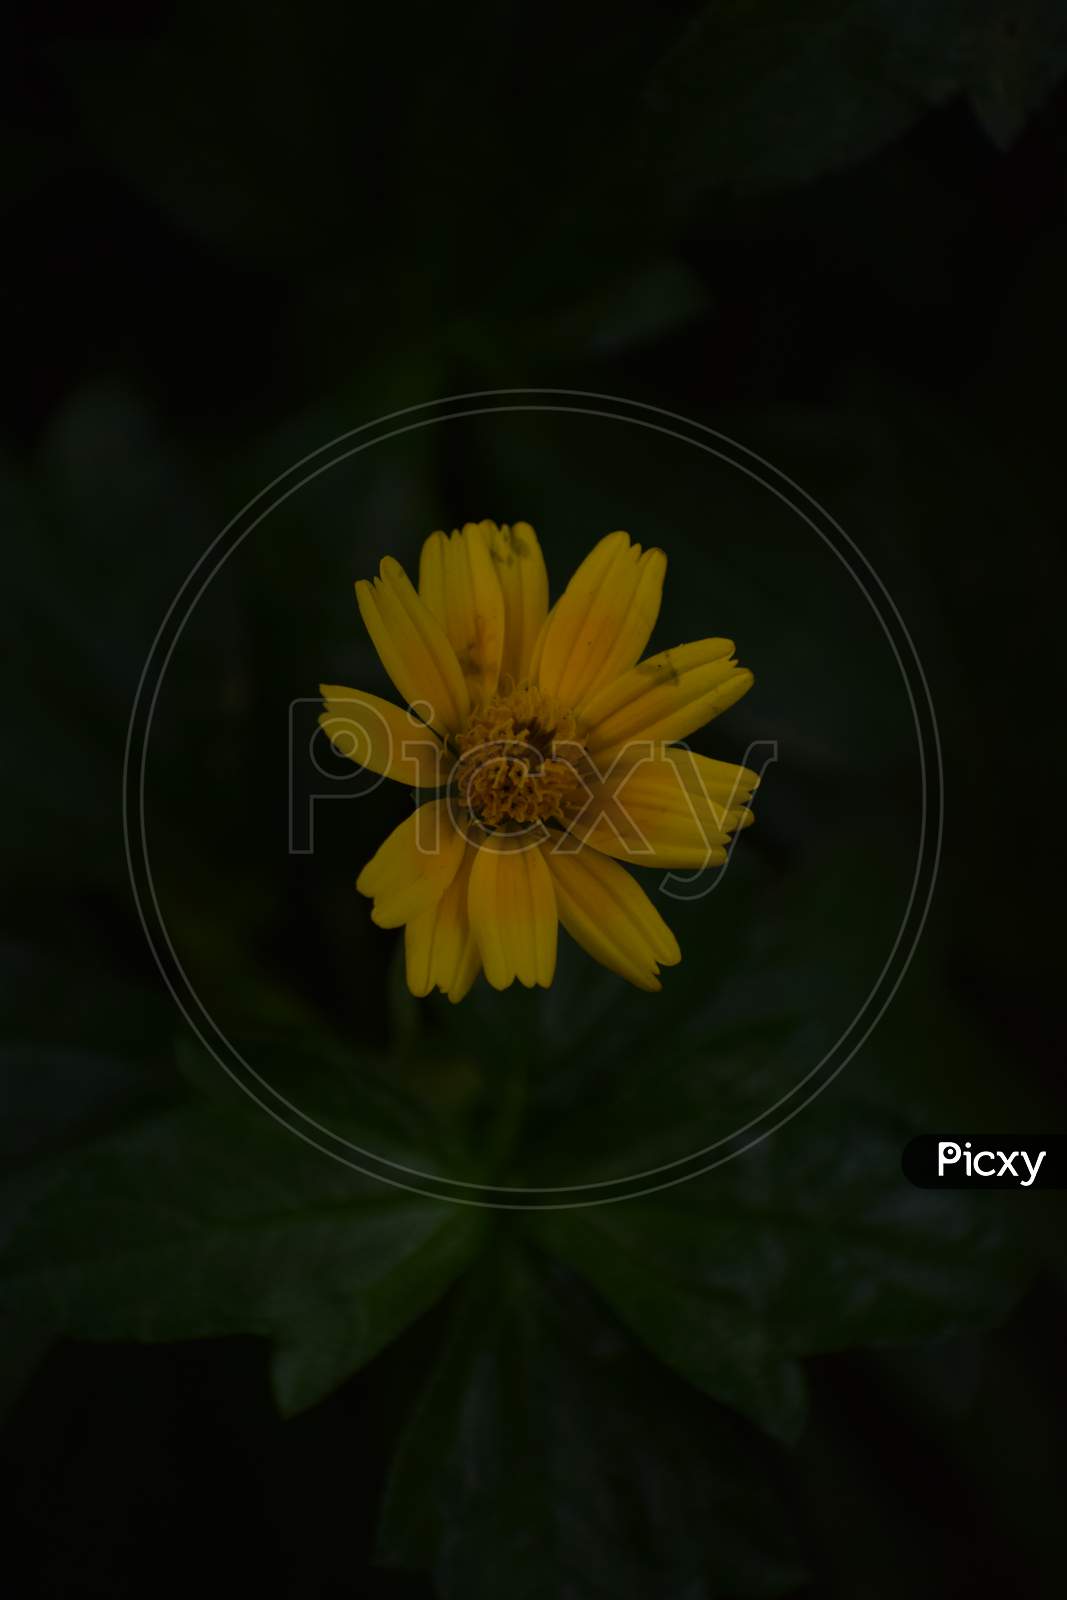 yellow flower with dark background